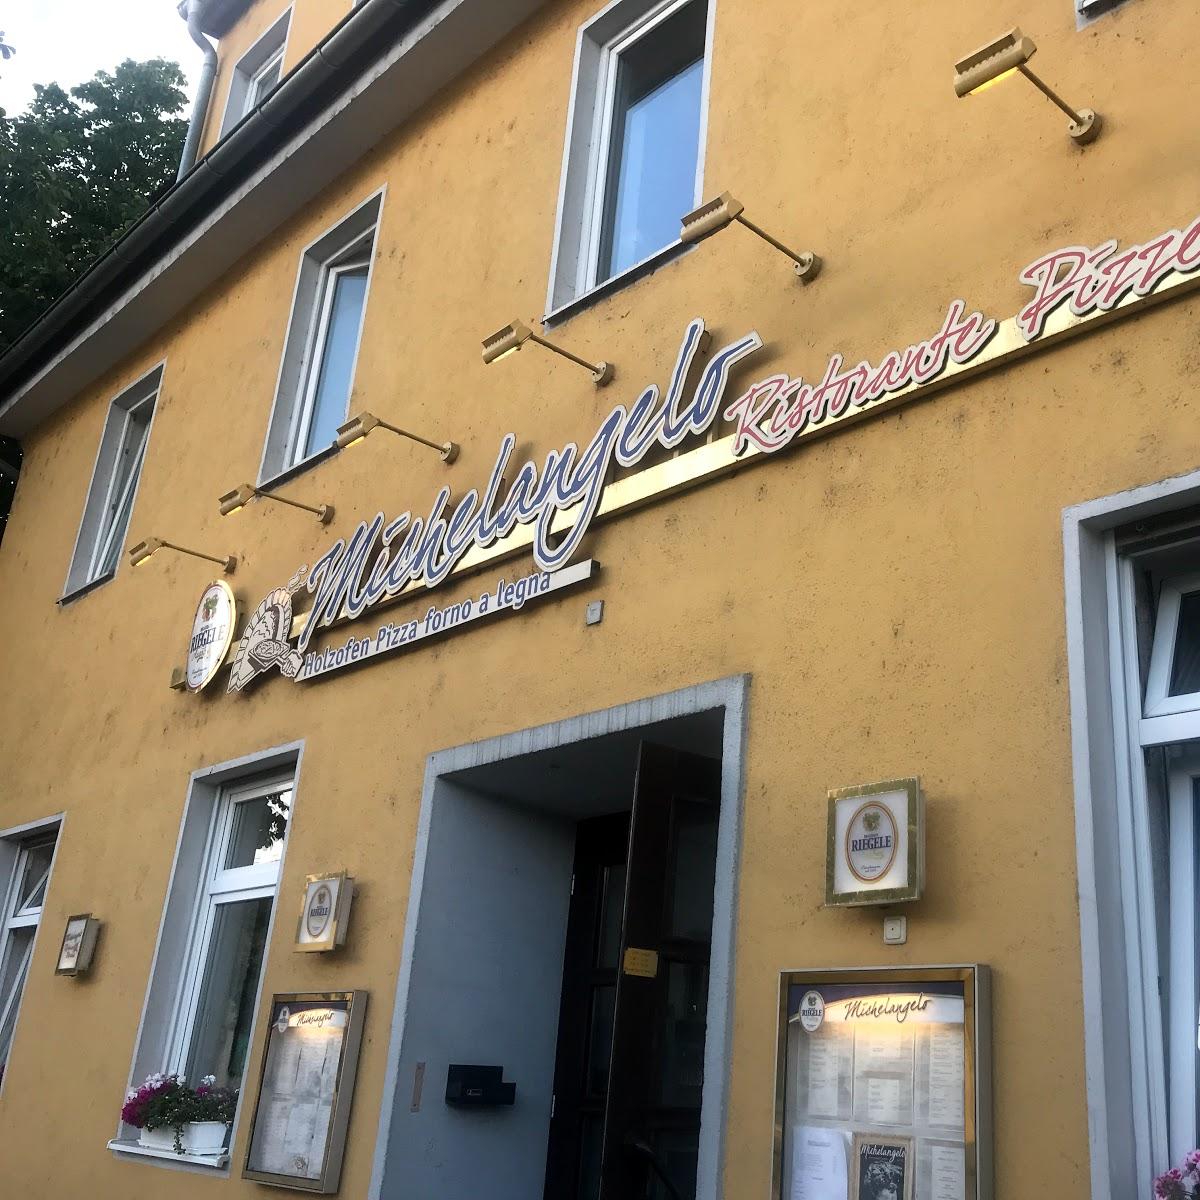 Restaurant "Michelangelo Pizzeria Pizzarestaurant" in  Augsburg